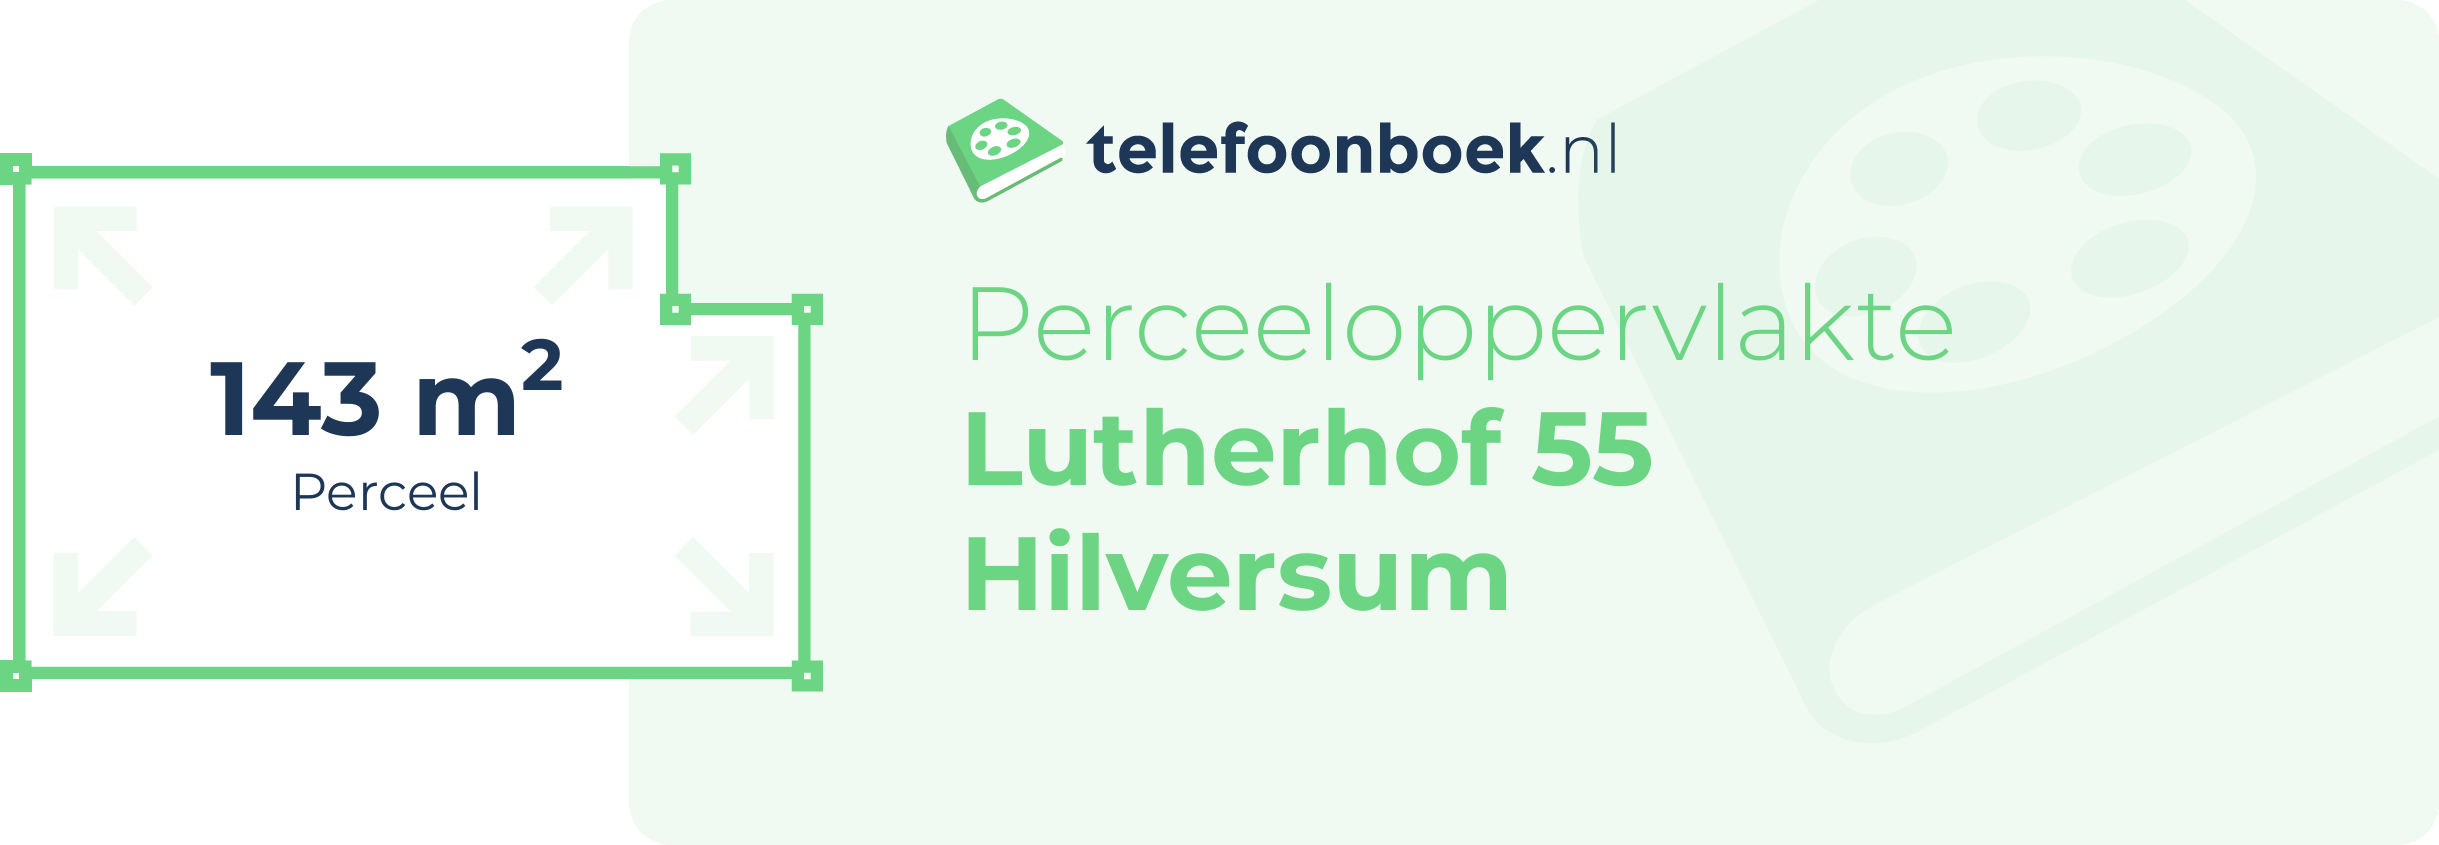 Perceeloppervlakte Lutherhof 55 Hilversum